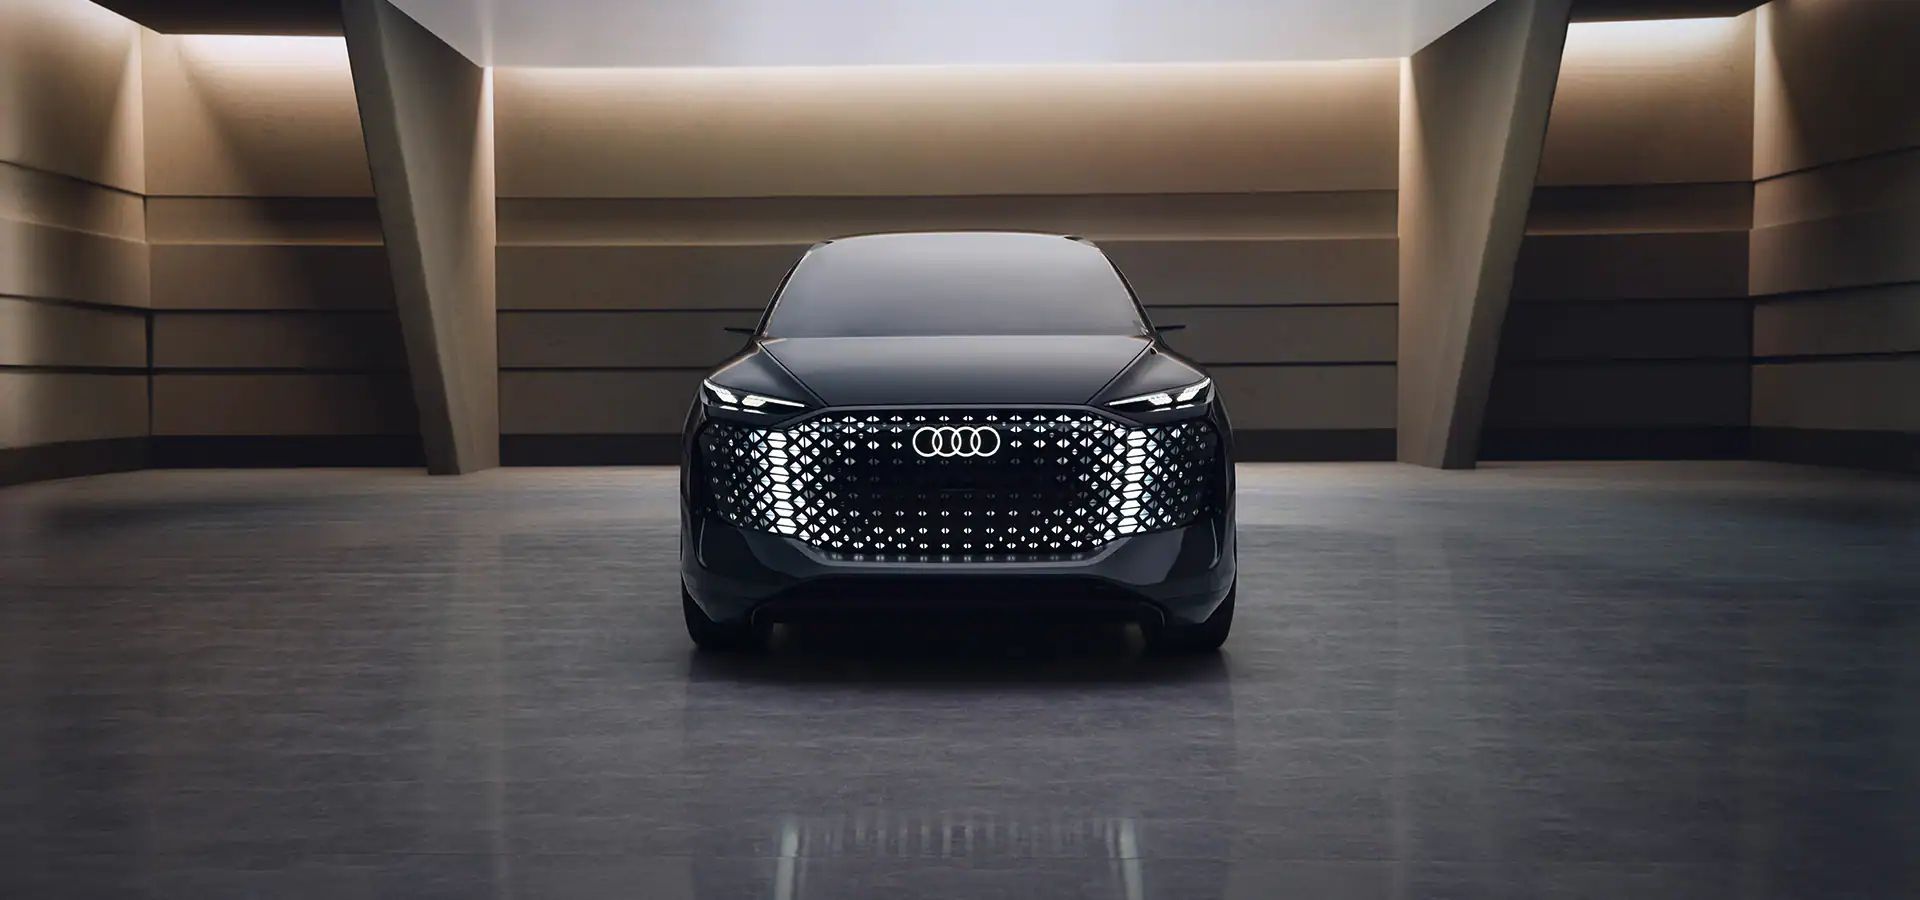 Audi Urbansphere Concept: el coche en el que puedes vivir